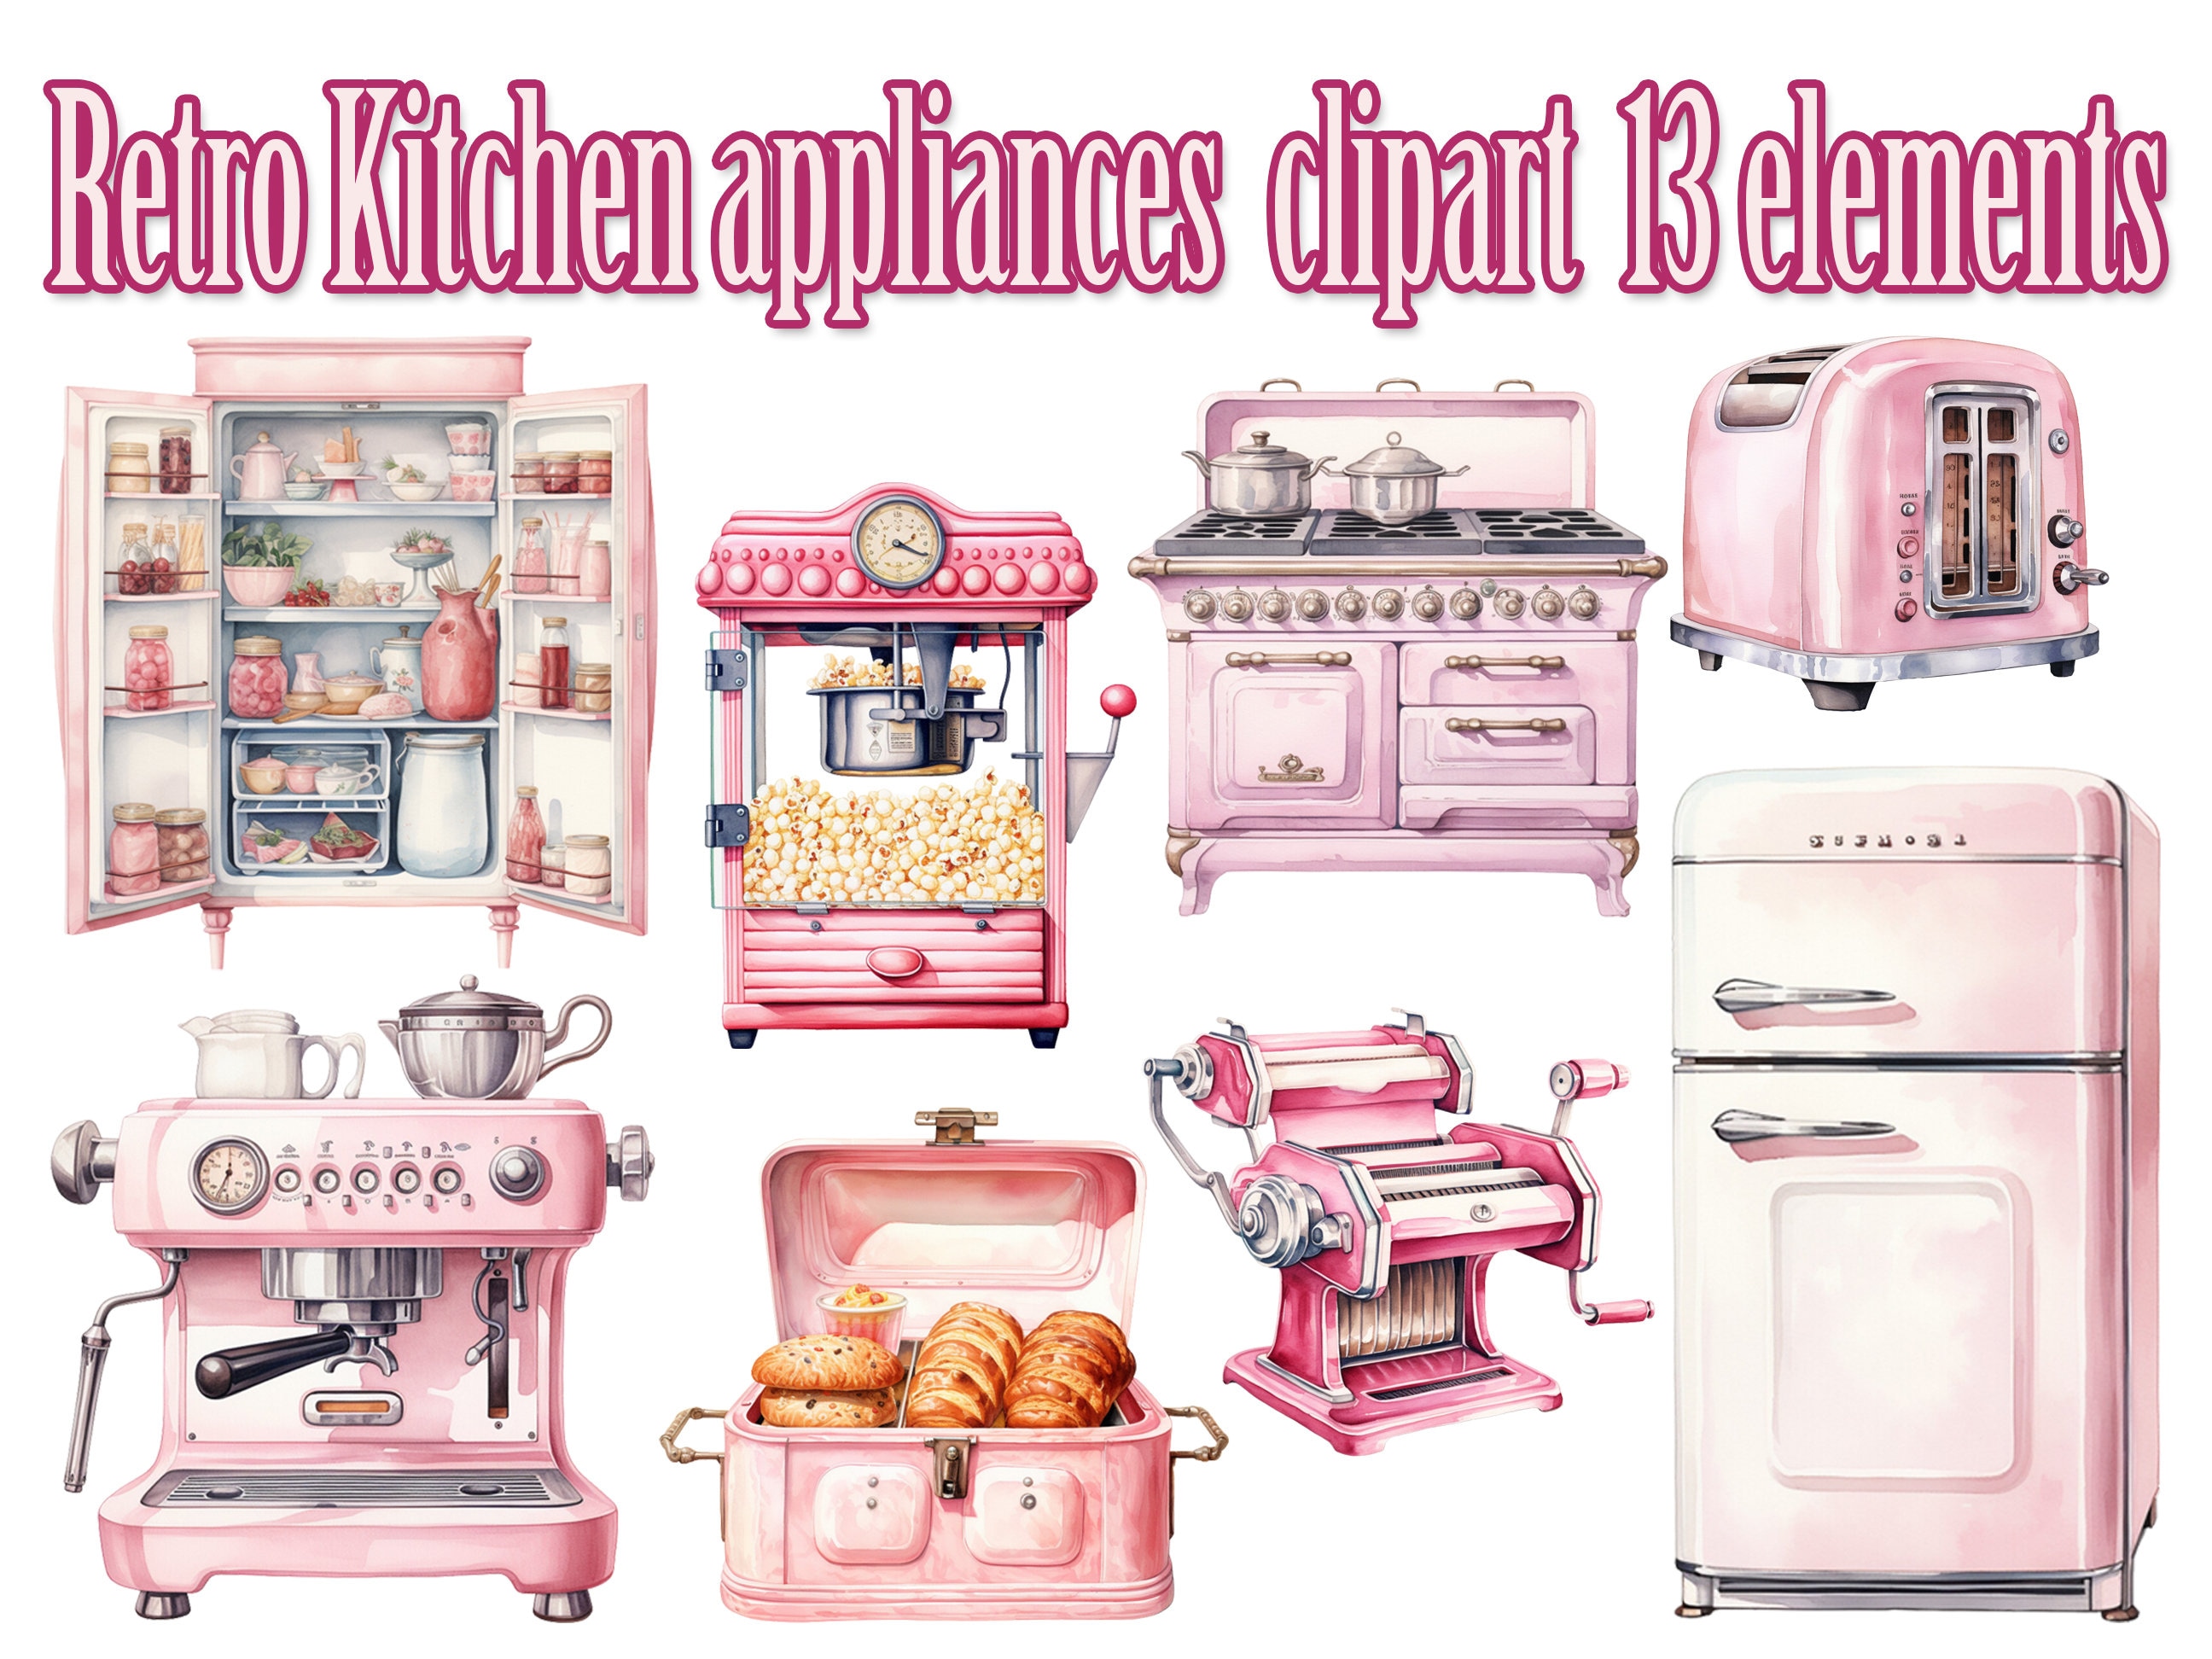 Retro Kitchen Appliances-Vintage meets Technology